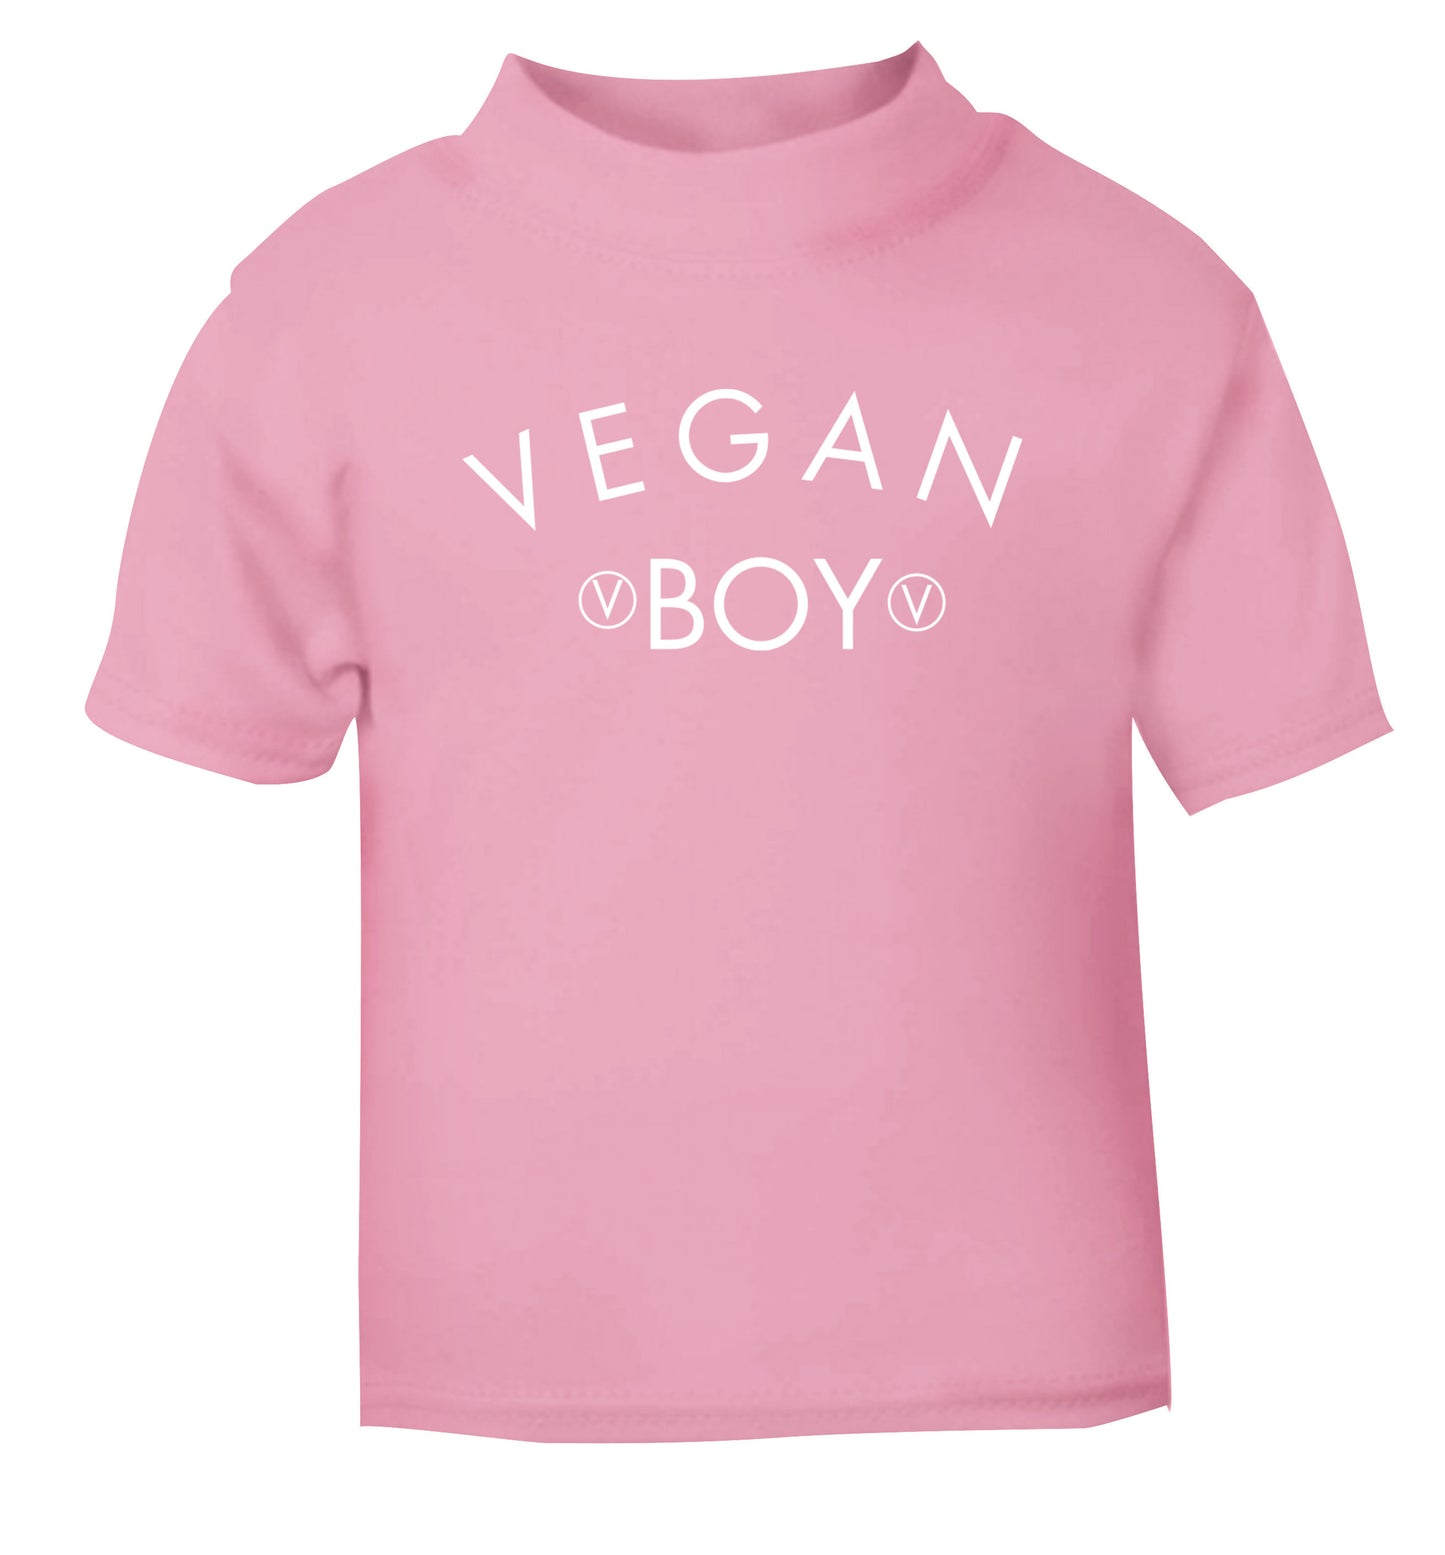 Vegan boy light pink Baby Toddler Tshirt 2 Years